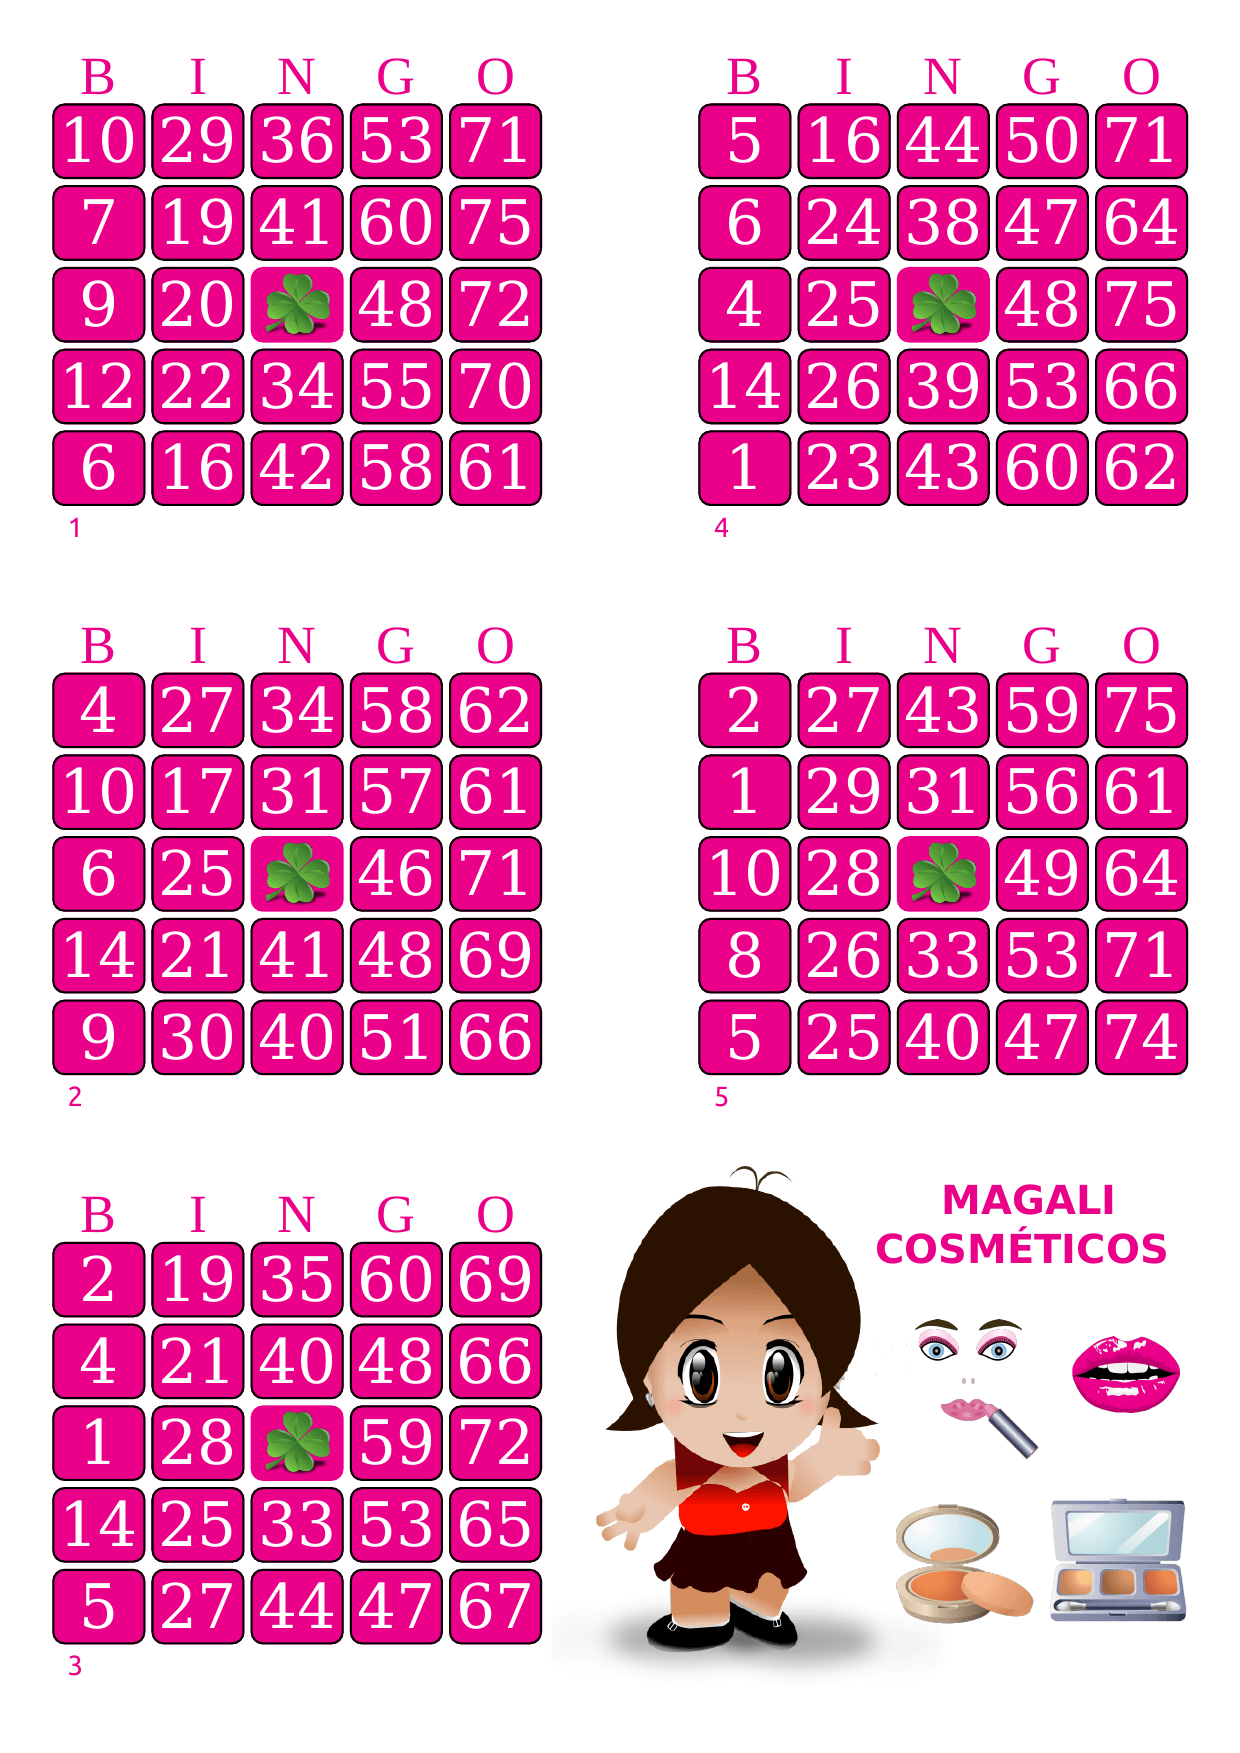 cartelas de bingo elaboradas